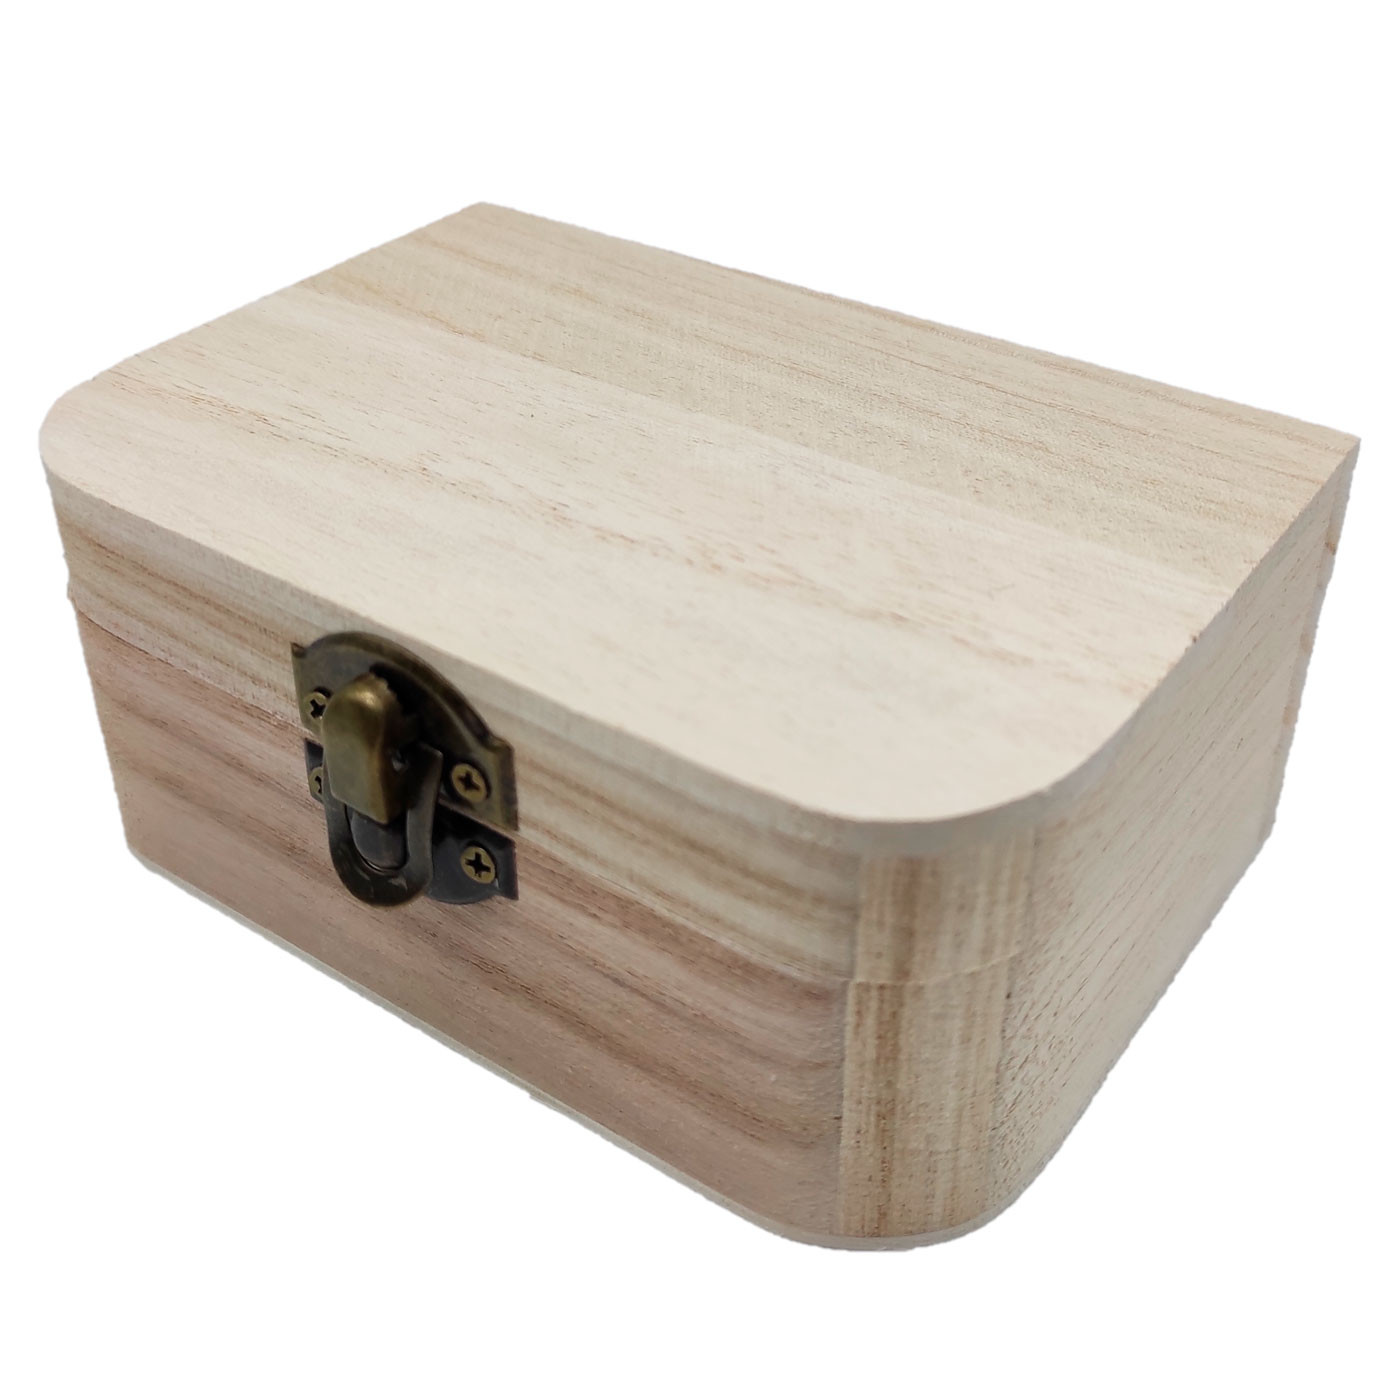 Caja de madera rectangular...